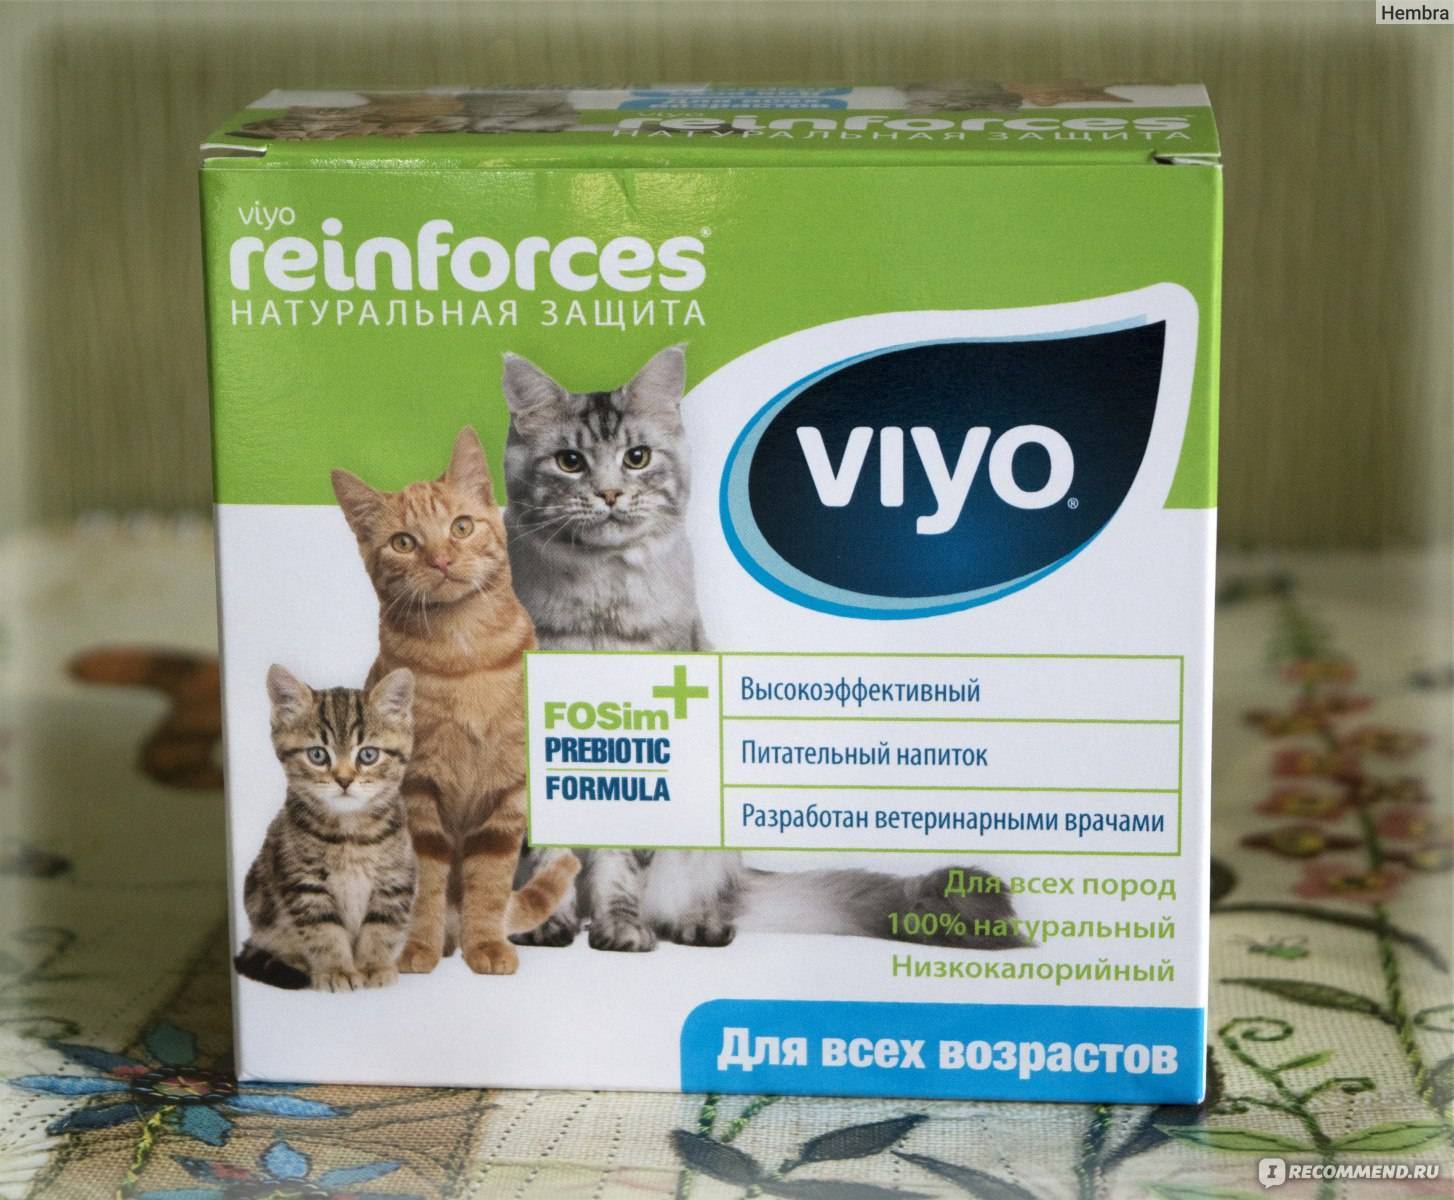 Cat | viyo reinforces